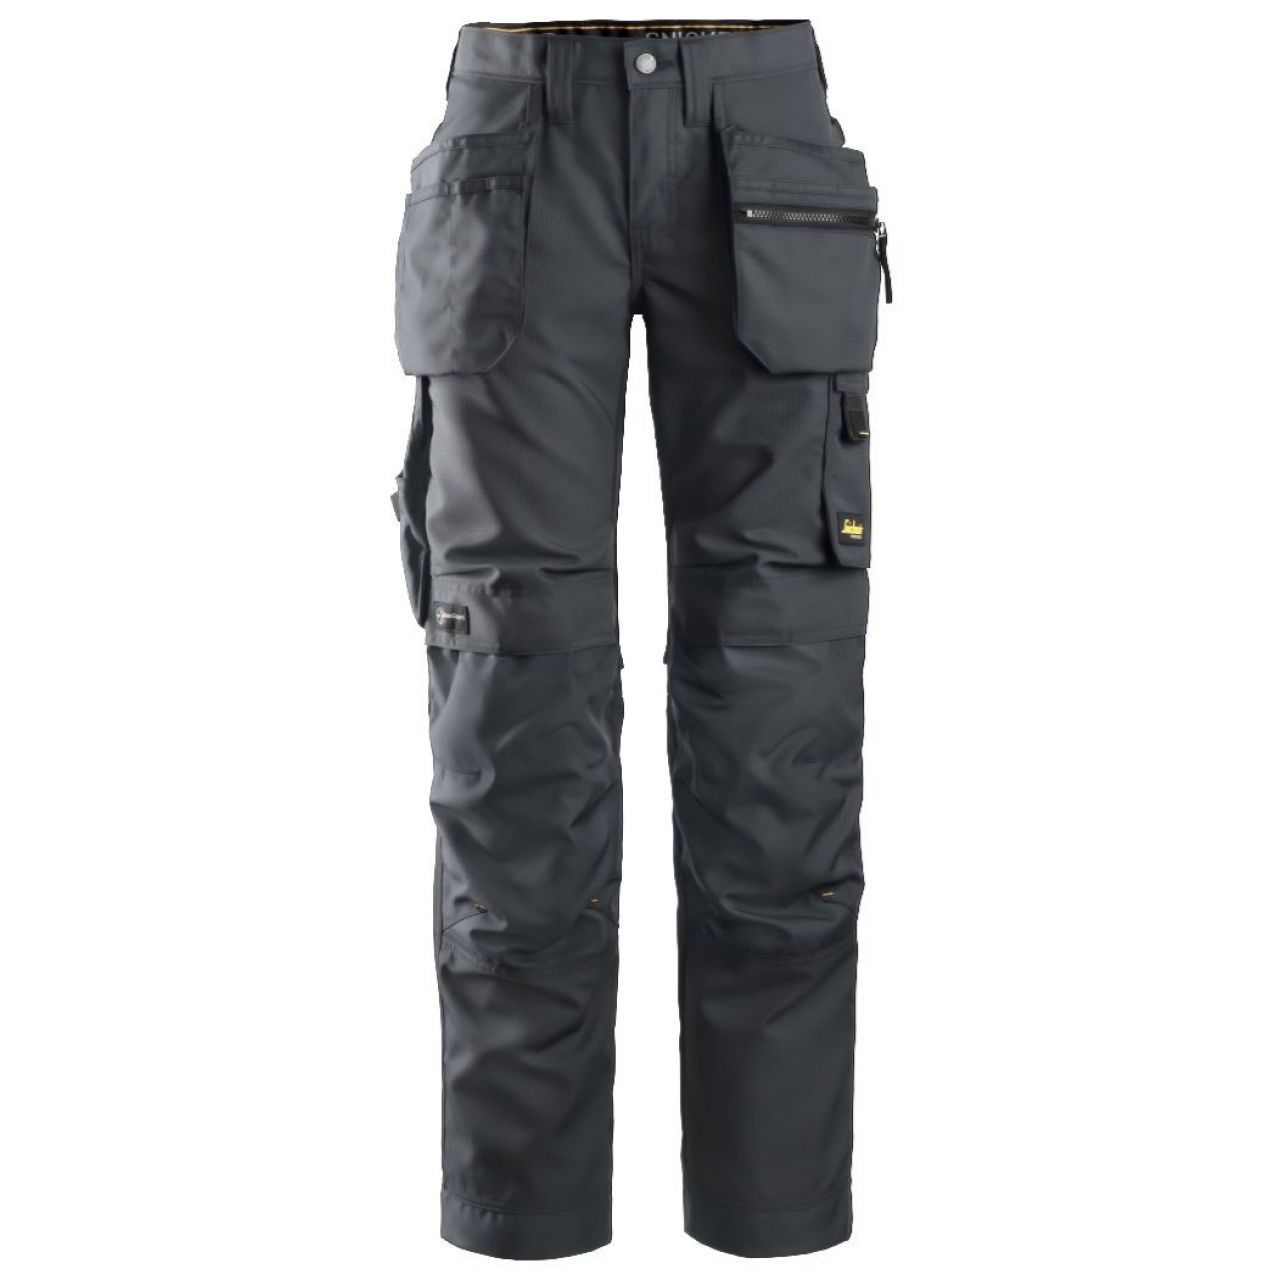 Pantalon de mujer AllroundWork+ con bolsillos flotantes gris acero-negro talla 080